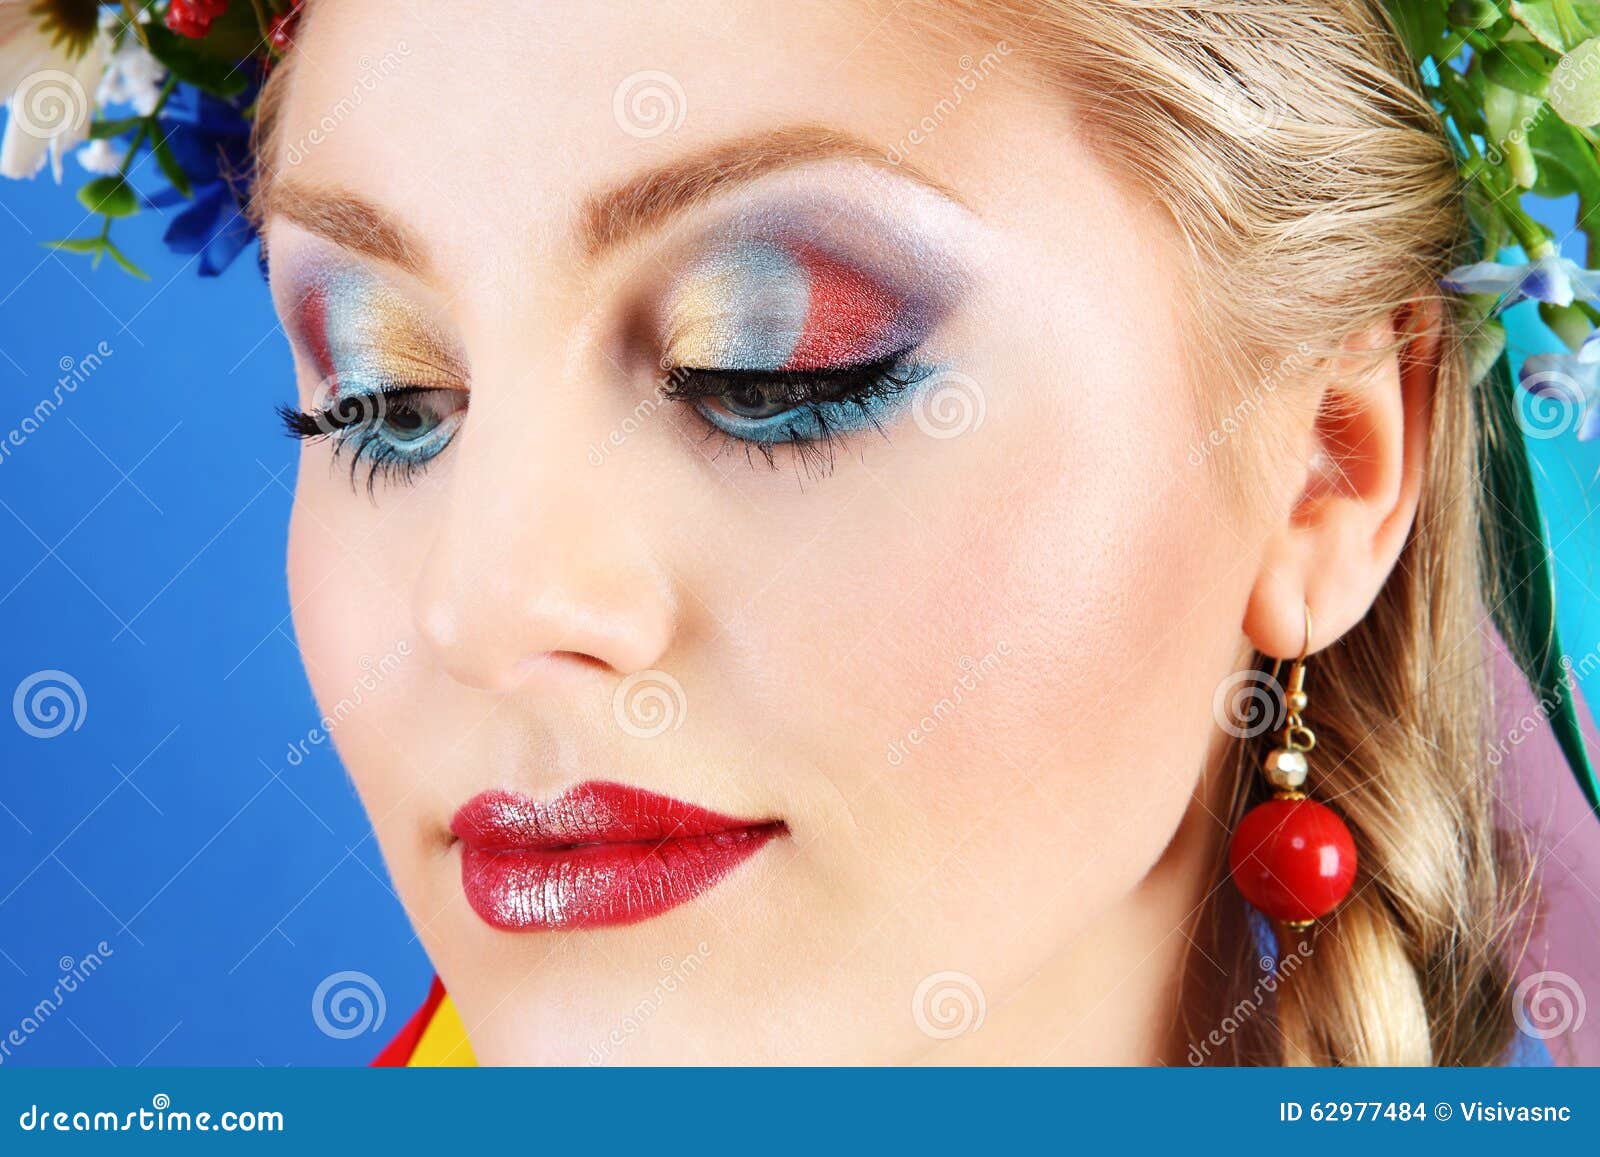 Maquillage De Femme De Portrait Avec Des Fleurs Sur Le Fond Bleu Photo Stock Image Du Bleu 